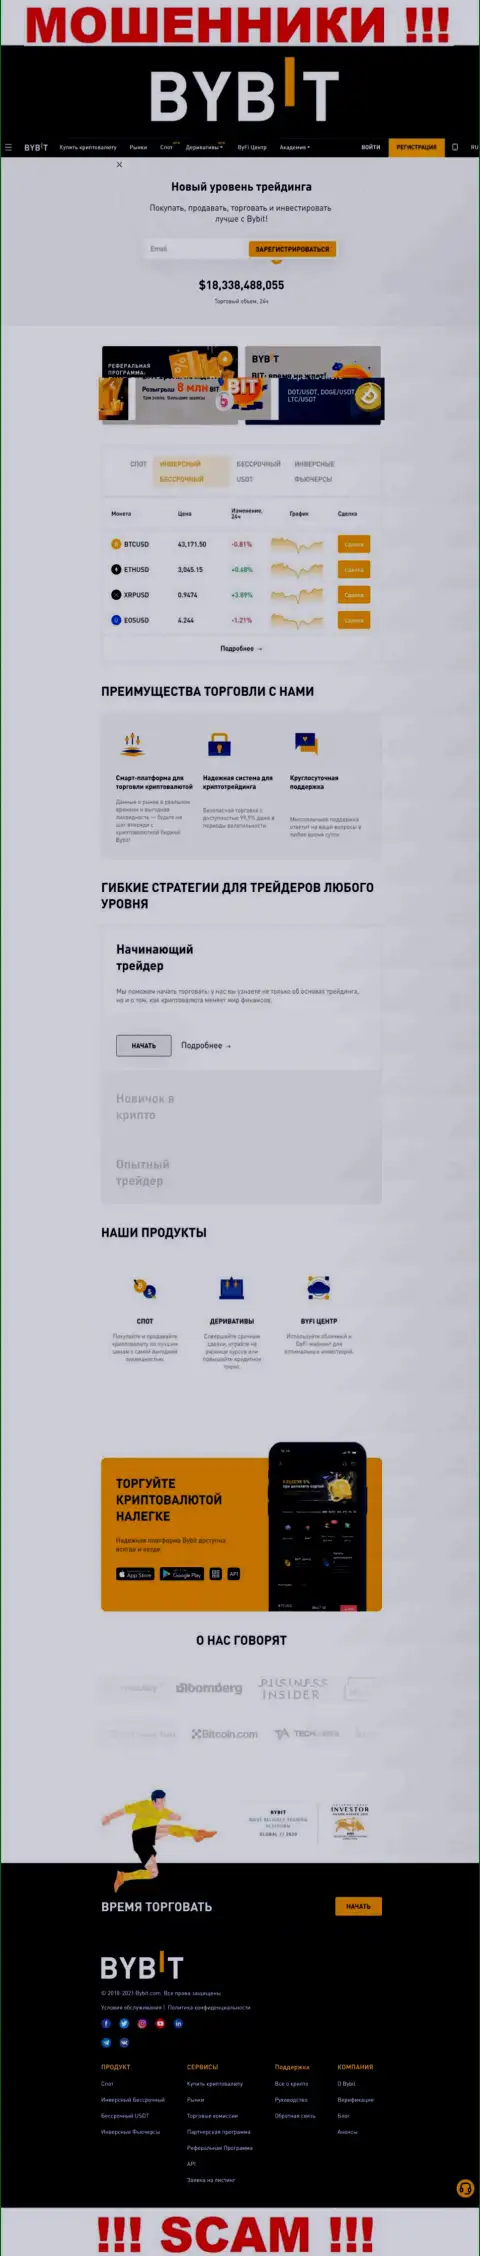 Основная страничка официального web-сайта мошенников БайБит Финтеч Лтд